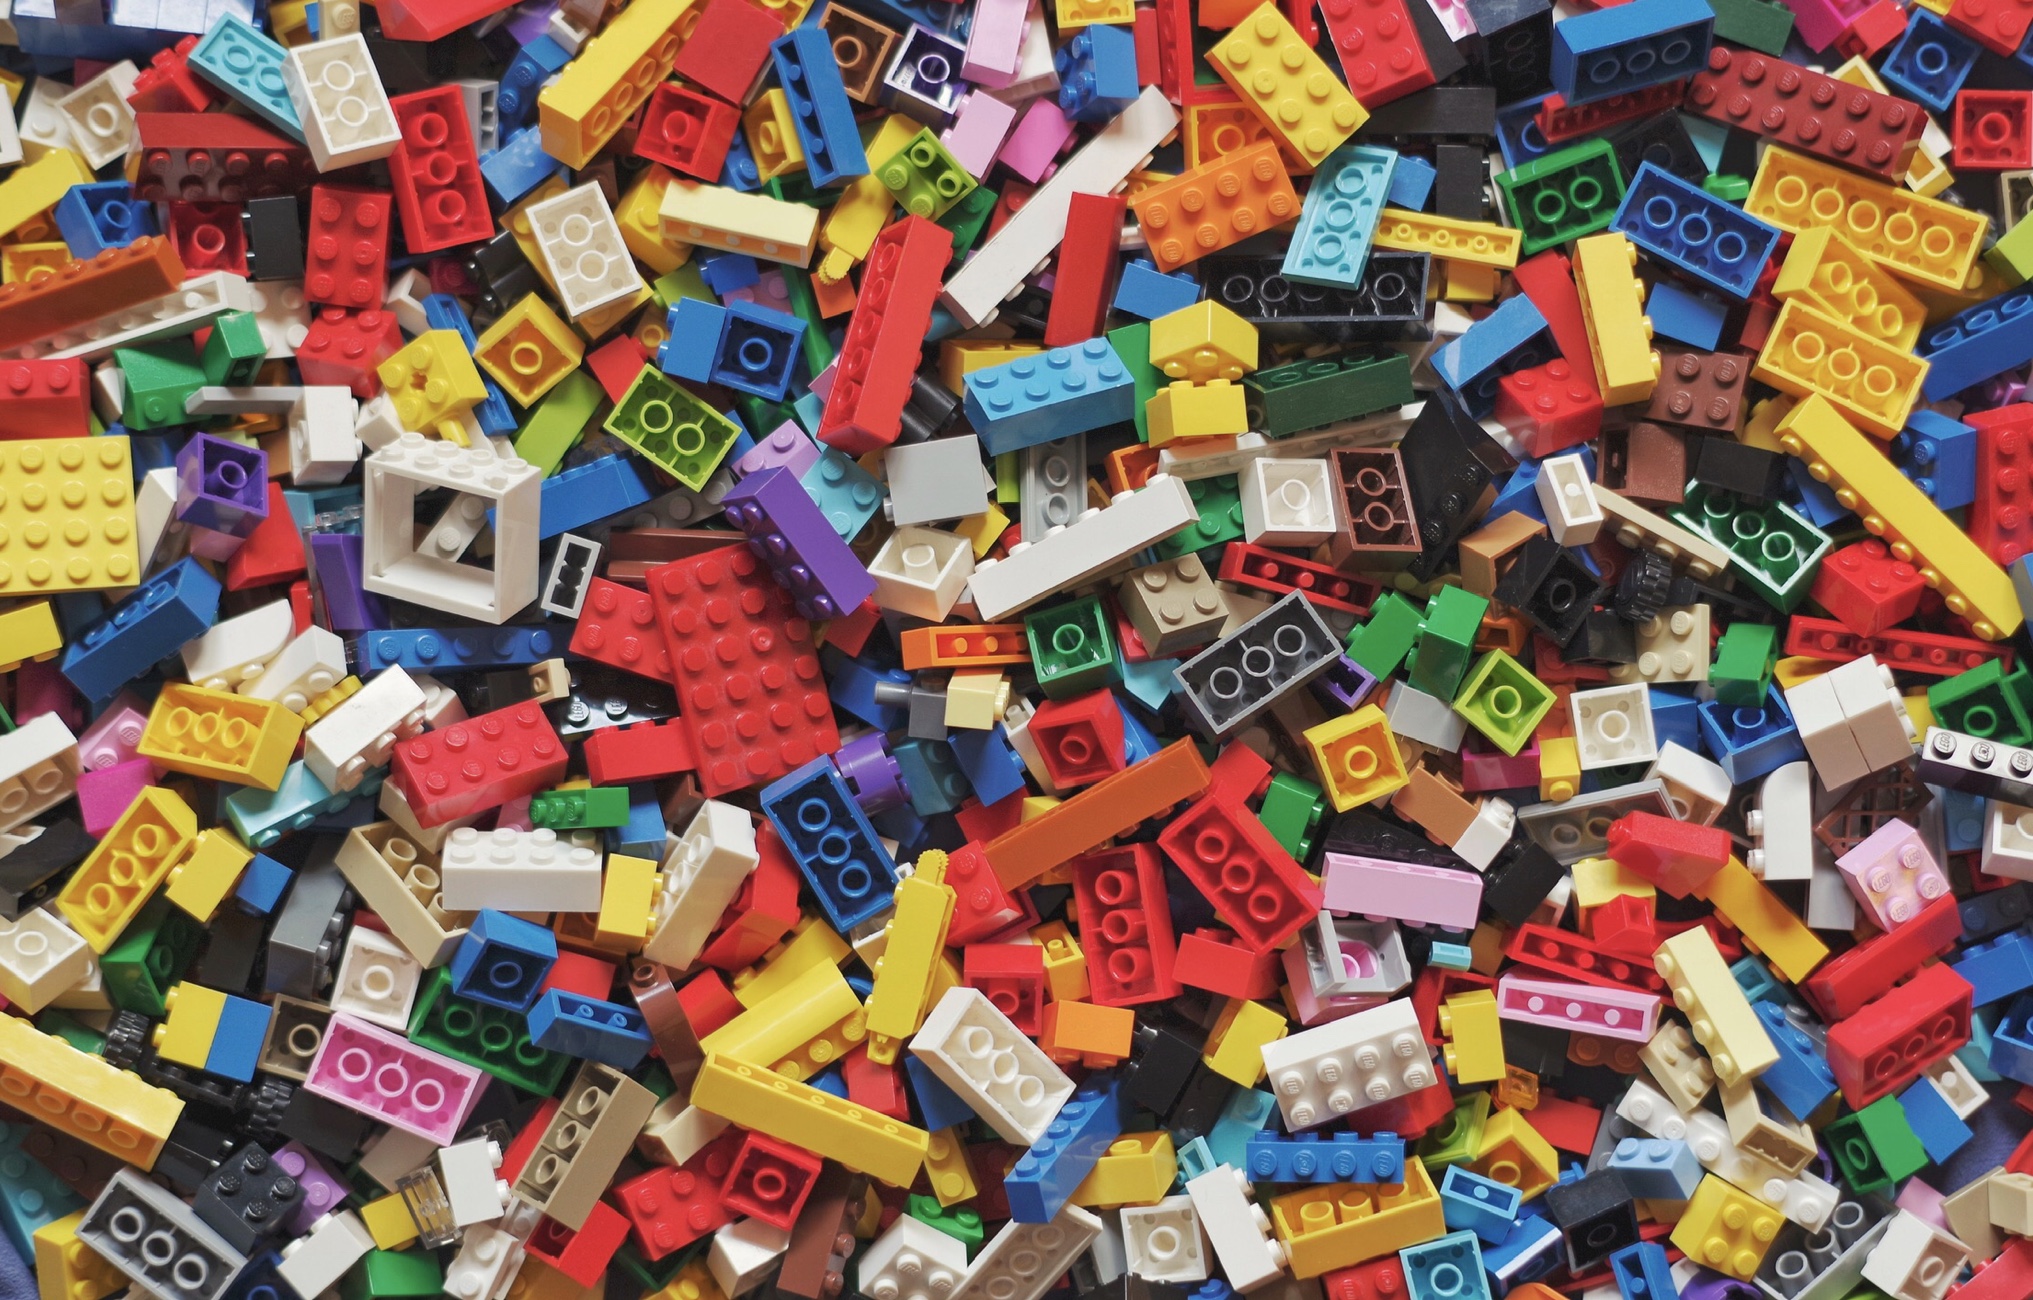 Wereldvenster Gelukkig is dat gas lego bouwsteentjes, over Lego, tips en tricks om te blijven bouwen.